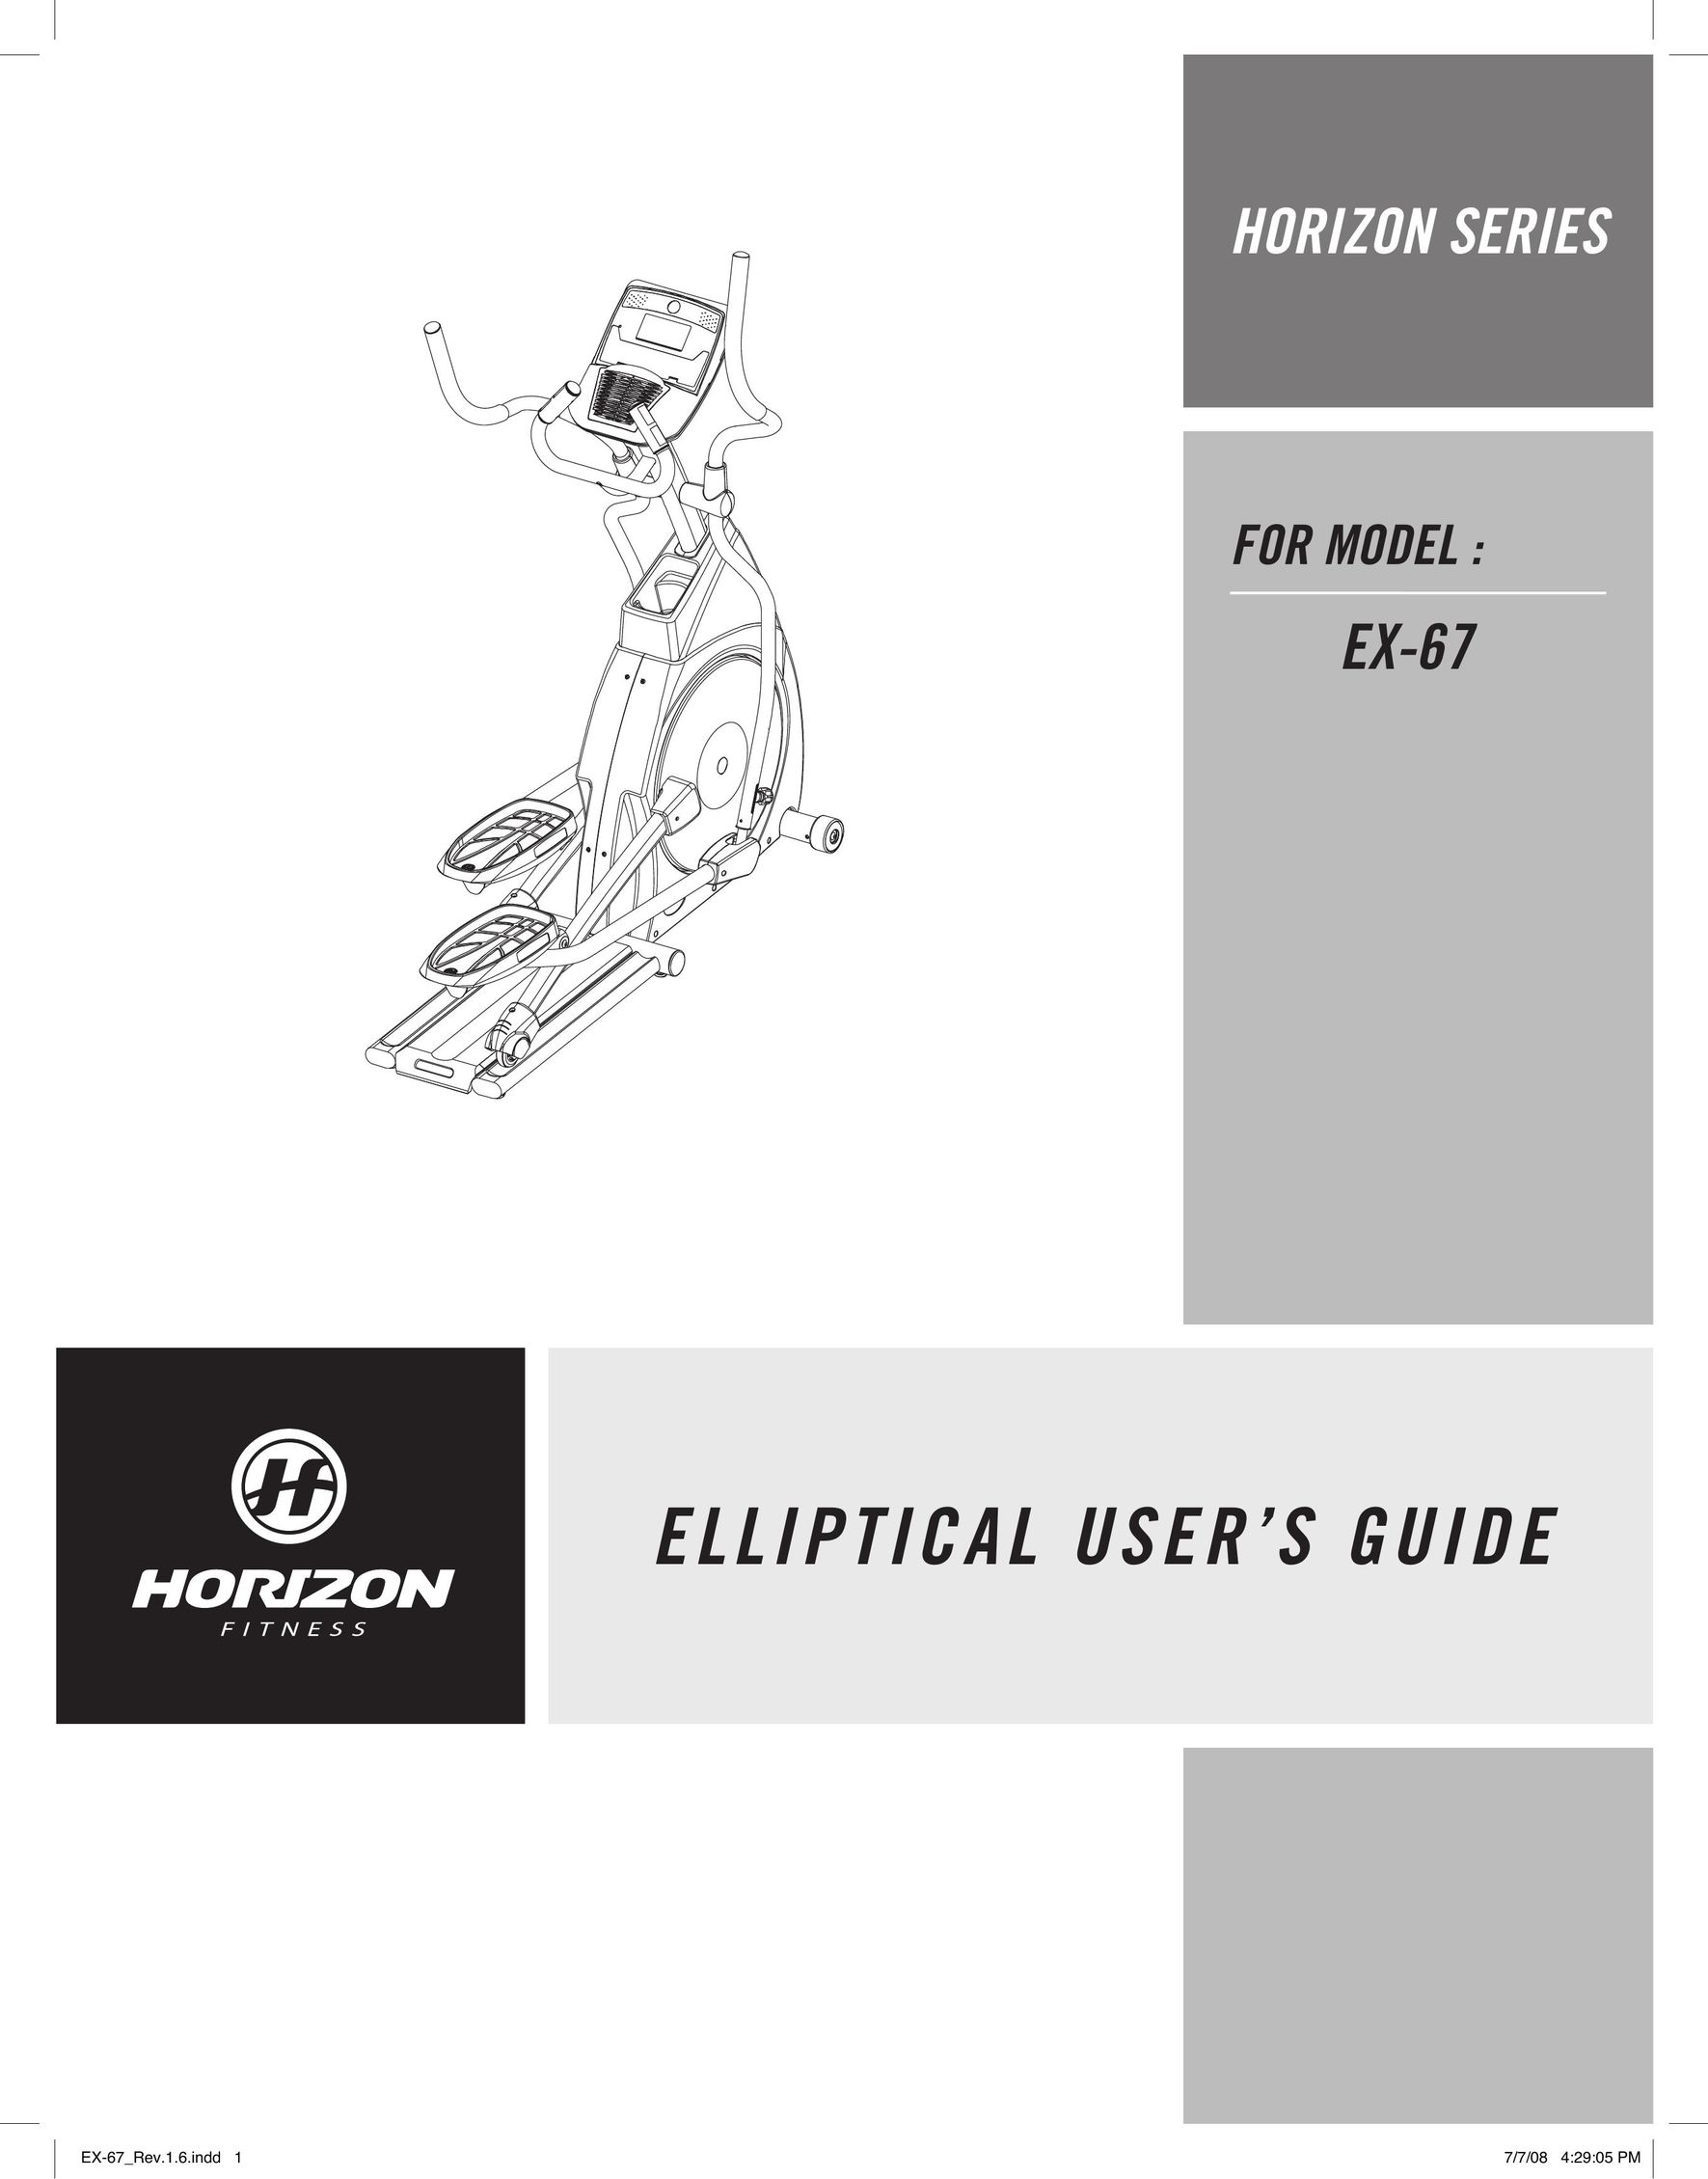 Horizon Fitness EX-67 Elliptical Trainer User Manual